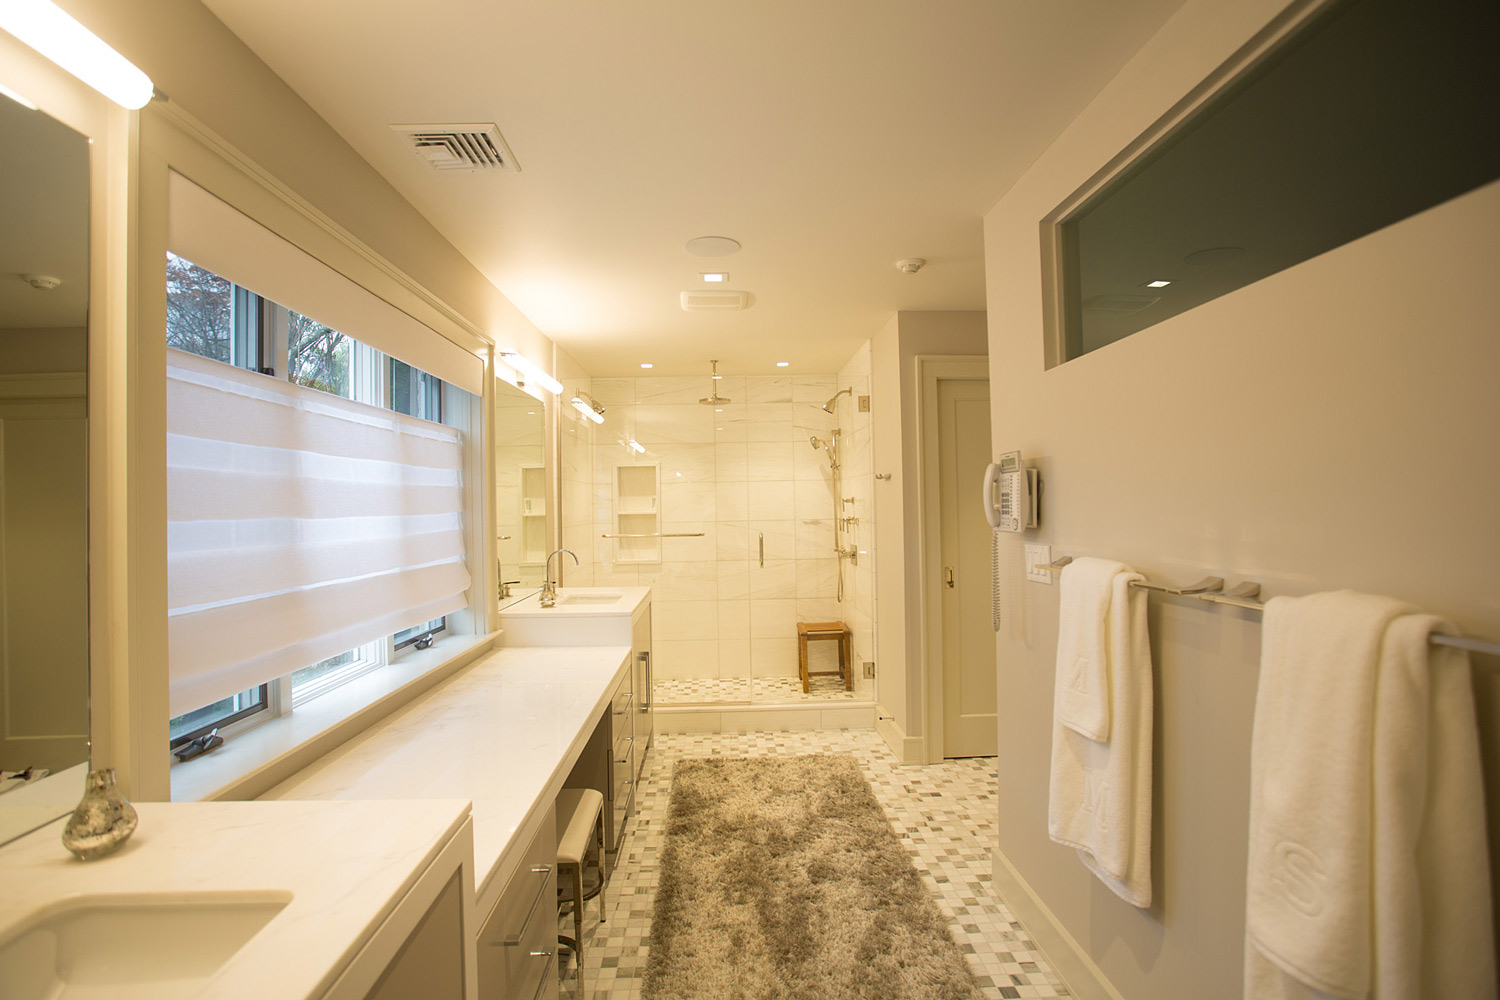 Bathroom renovation in Roslyn by Annette Jaffe Interiors